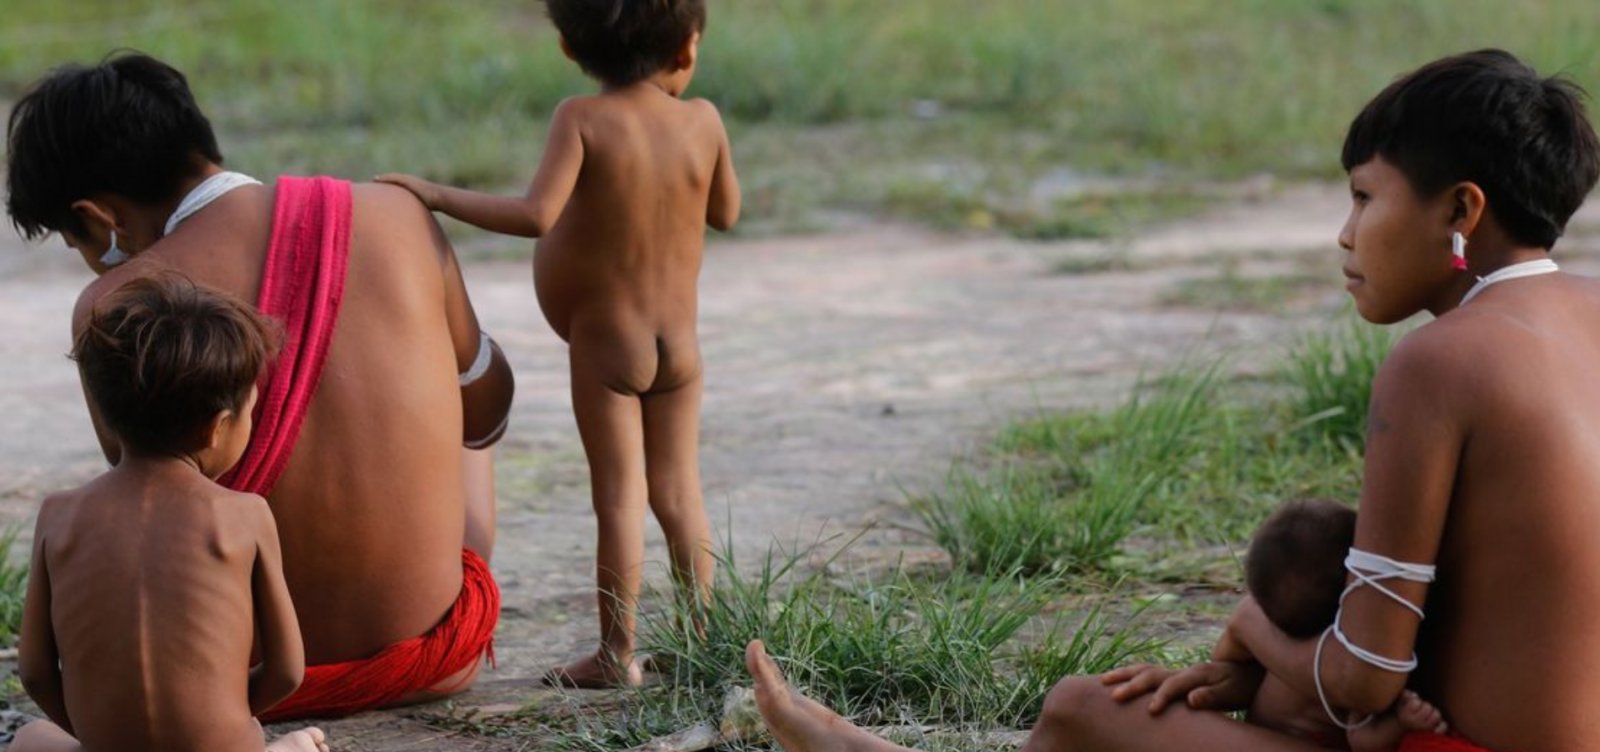 Mortalidade infantil entre indígenas é mais que o dobro das crianças não indígenas